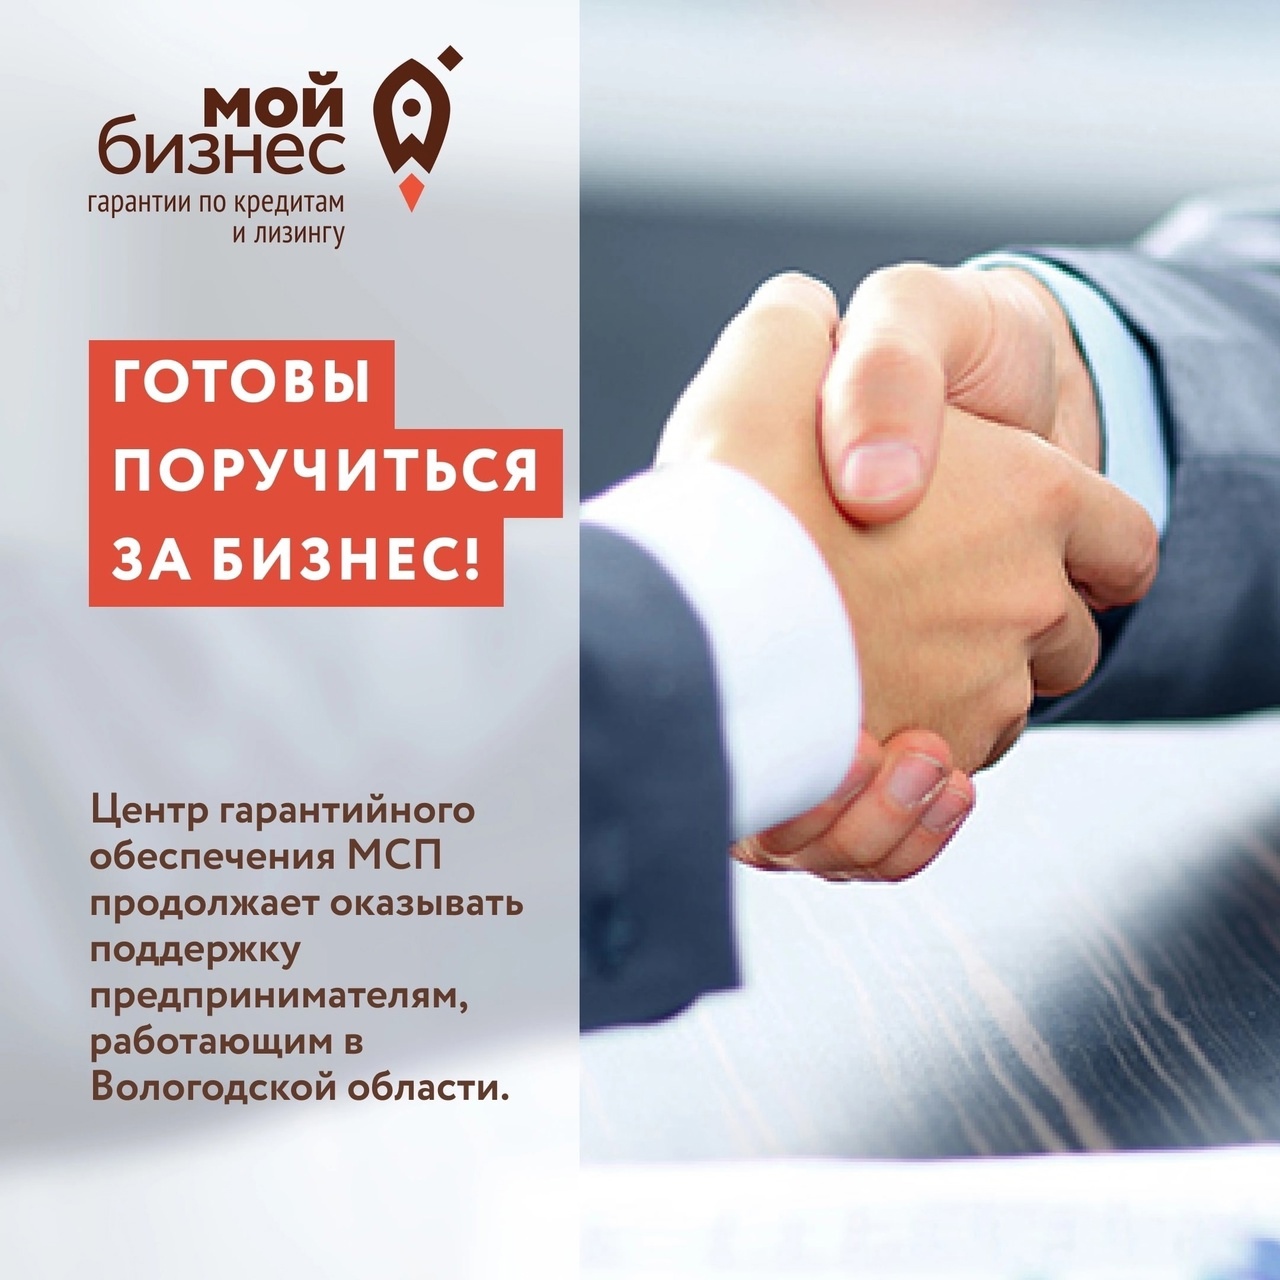 Центр гарантийного обеспечения МСП готов поручиться за бизнес Вологодской области.